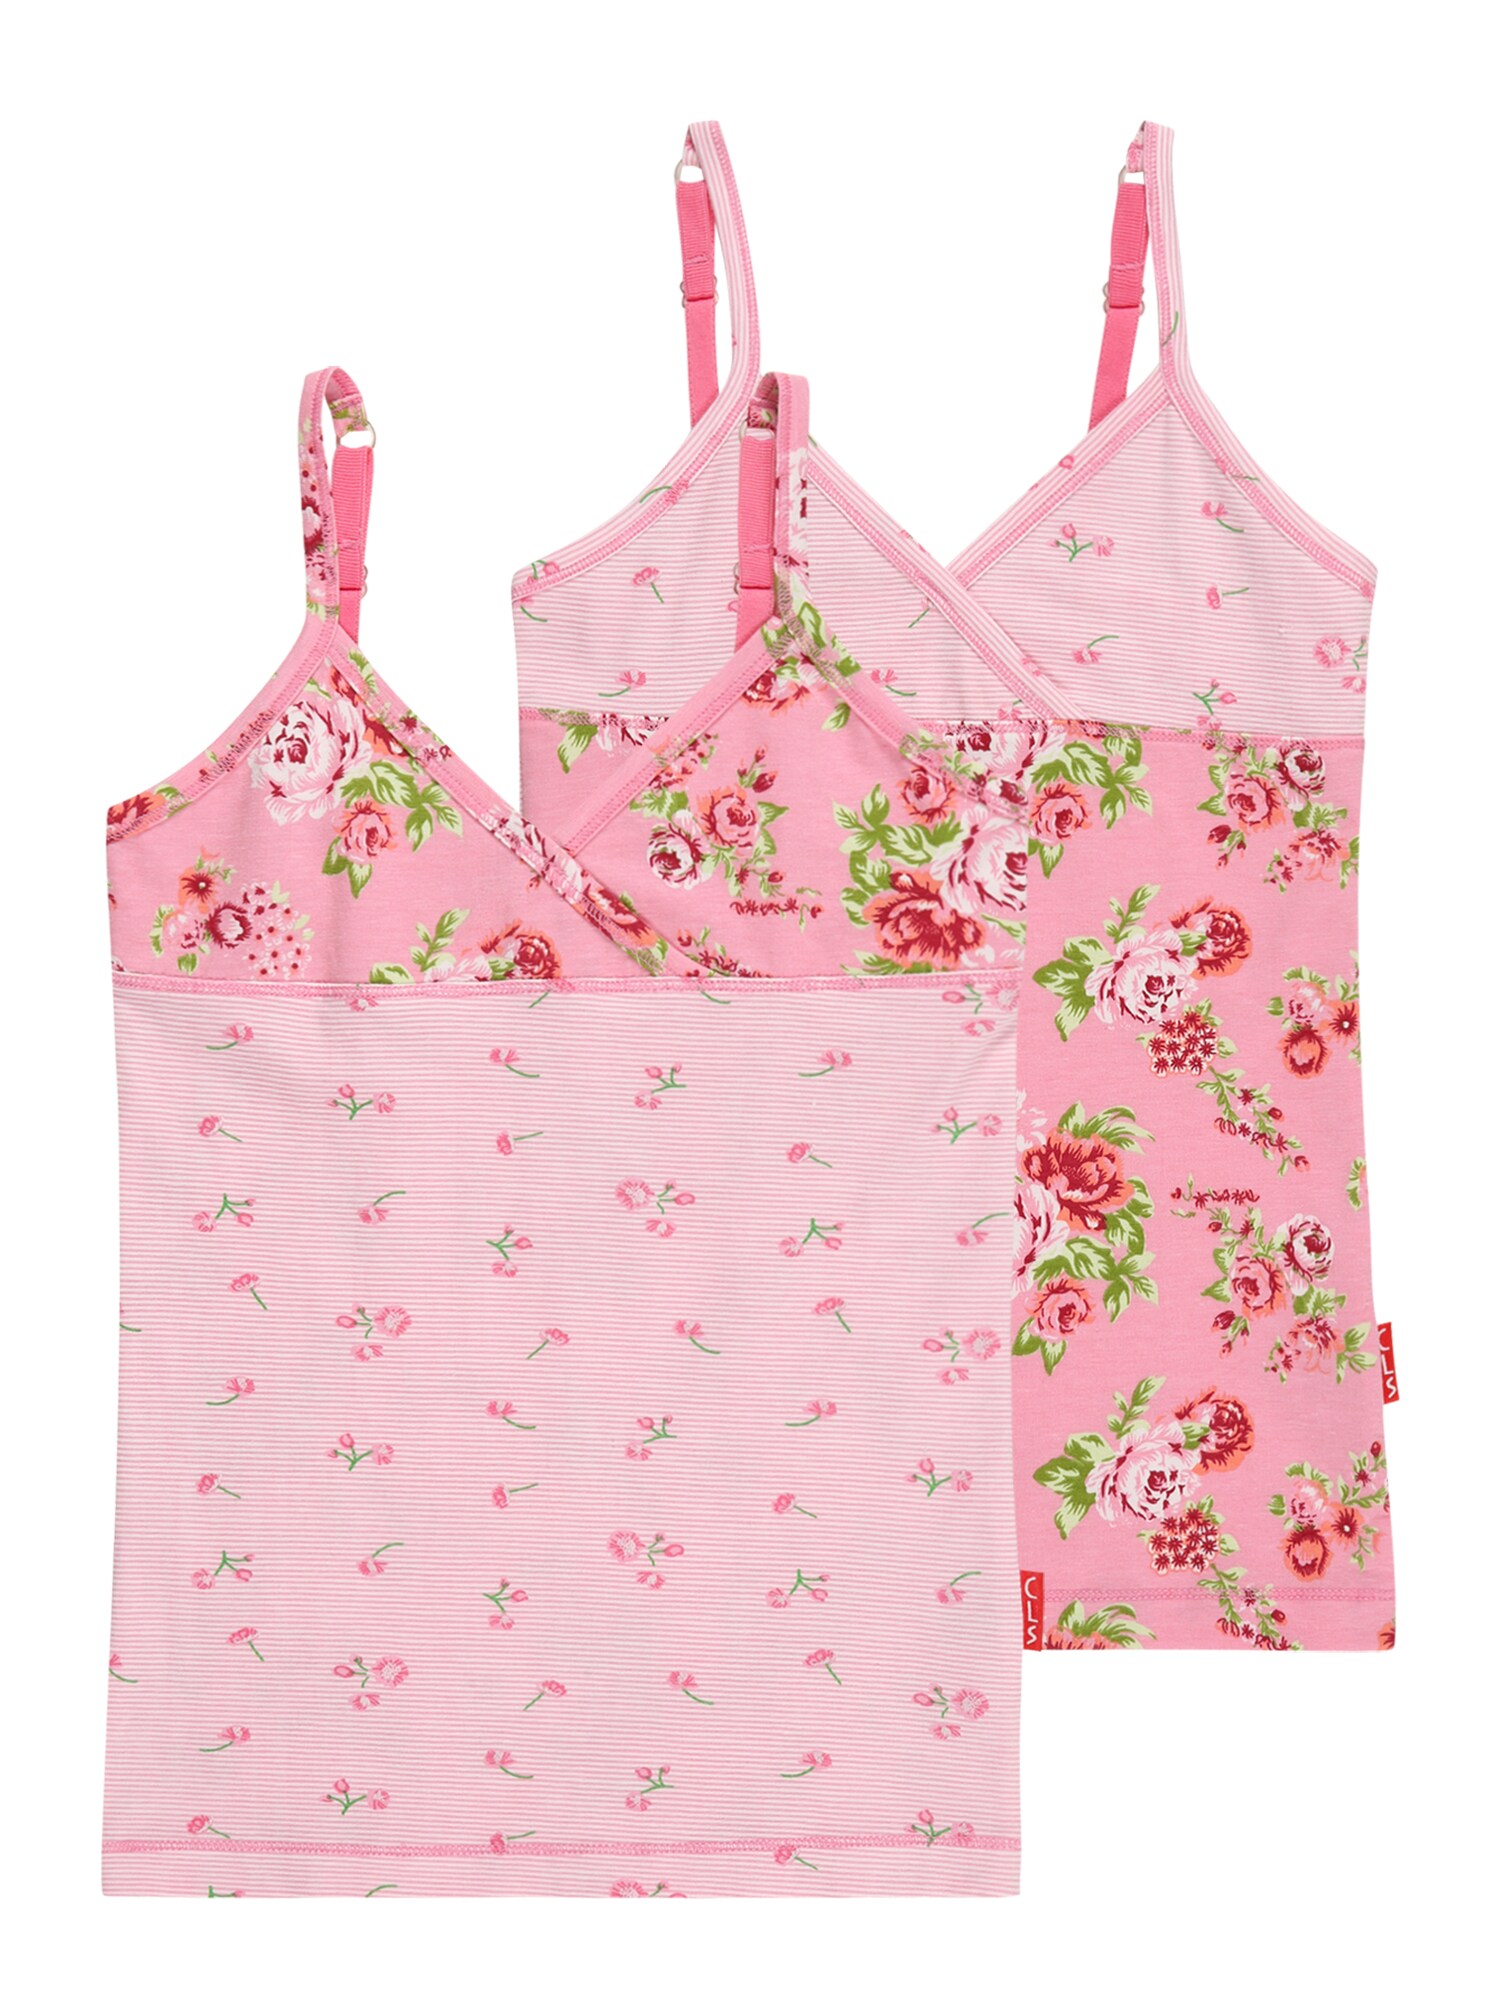 Claesen's Apatiniai marškinėliai žalia / balta / šviesiai rožinė / skaisti avietinė ar rubino spalva